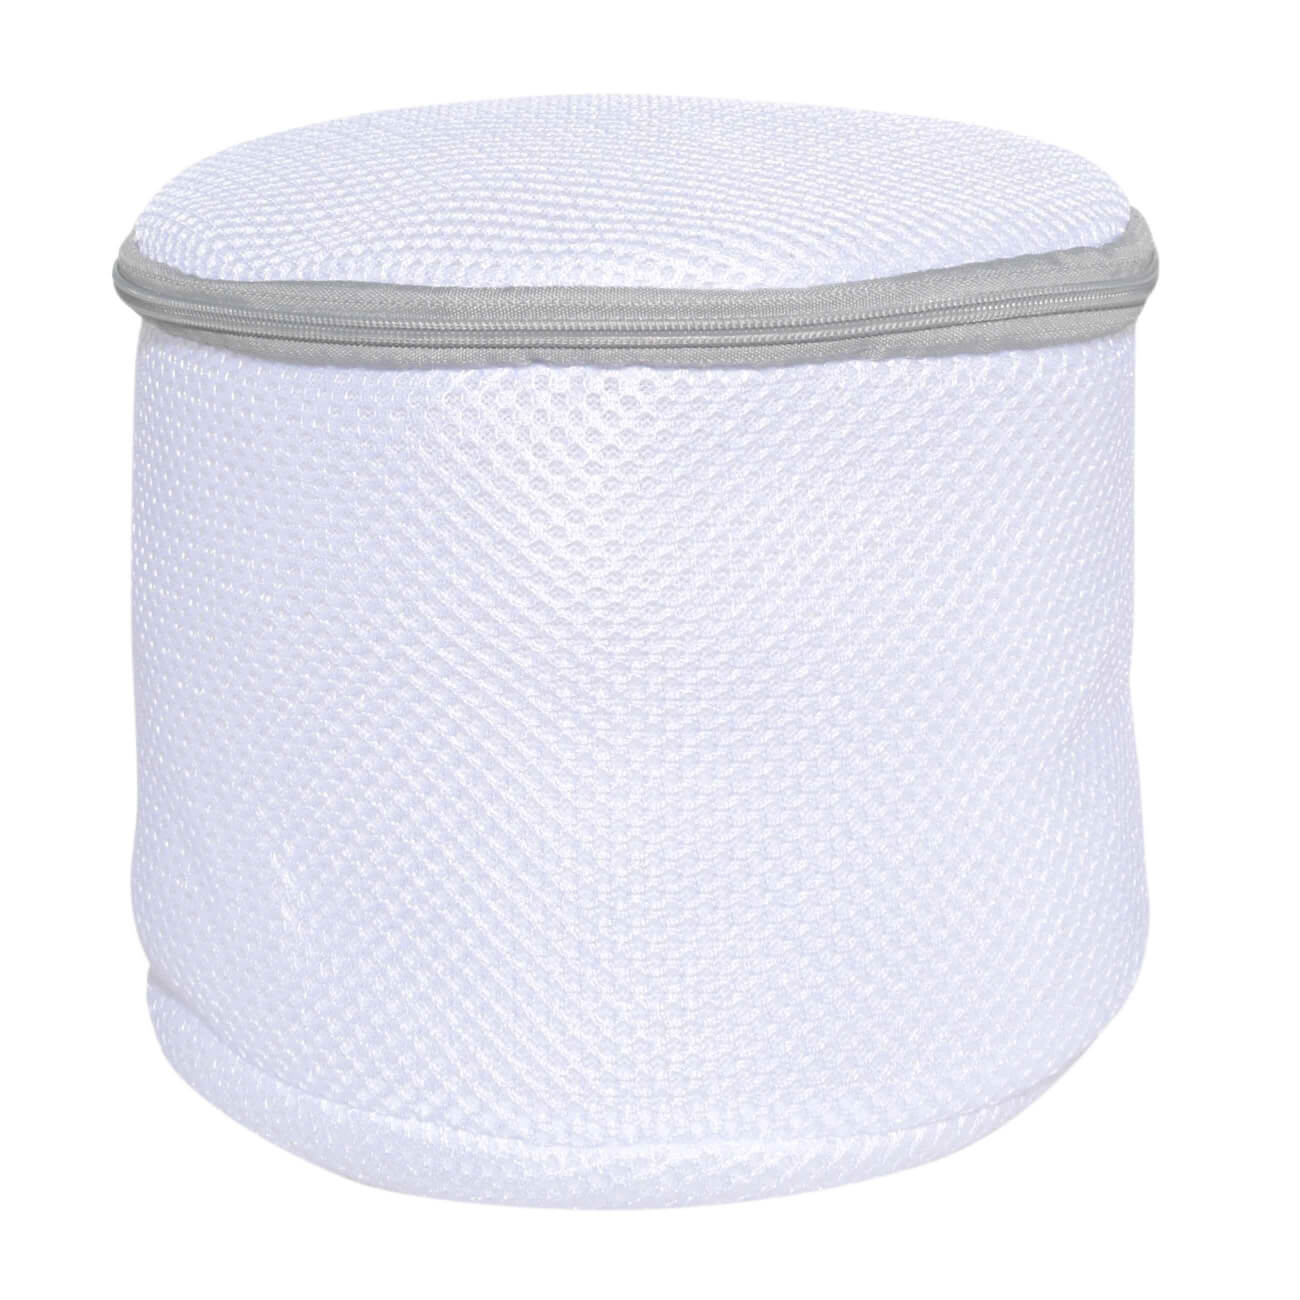 Мешок для стирки бюстгалтеров, 17х15 см, с защитой, полиэстер, бело-серый, Safety мешок для стирки одежды 40х50 см полиэстер safety plus